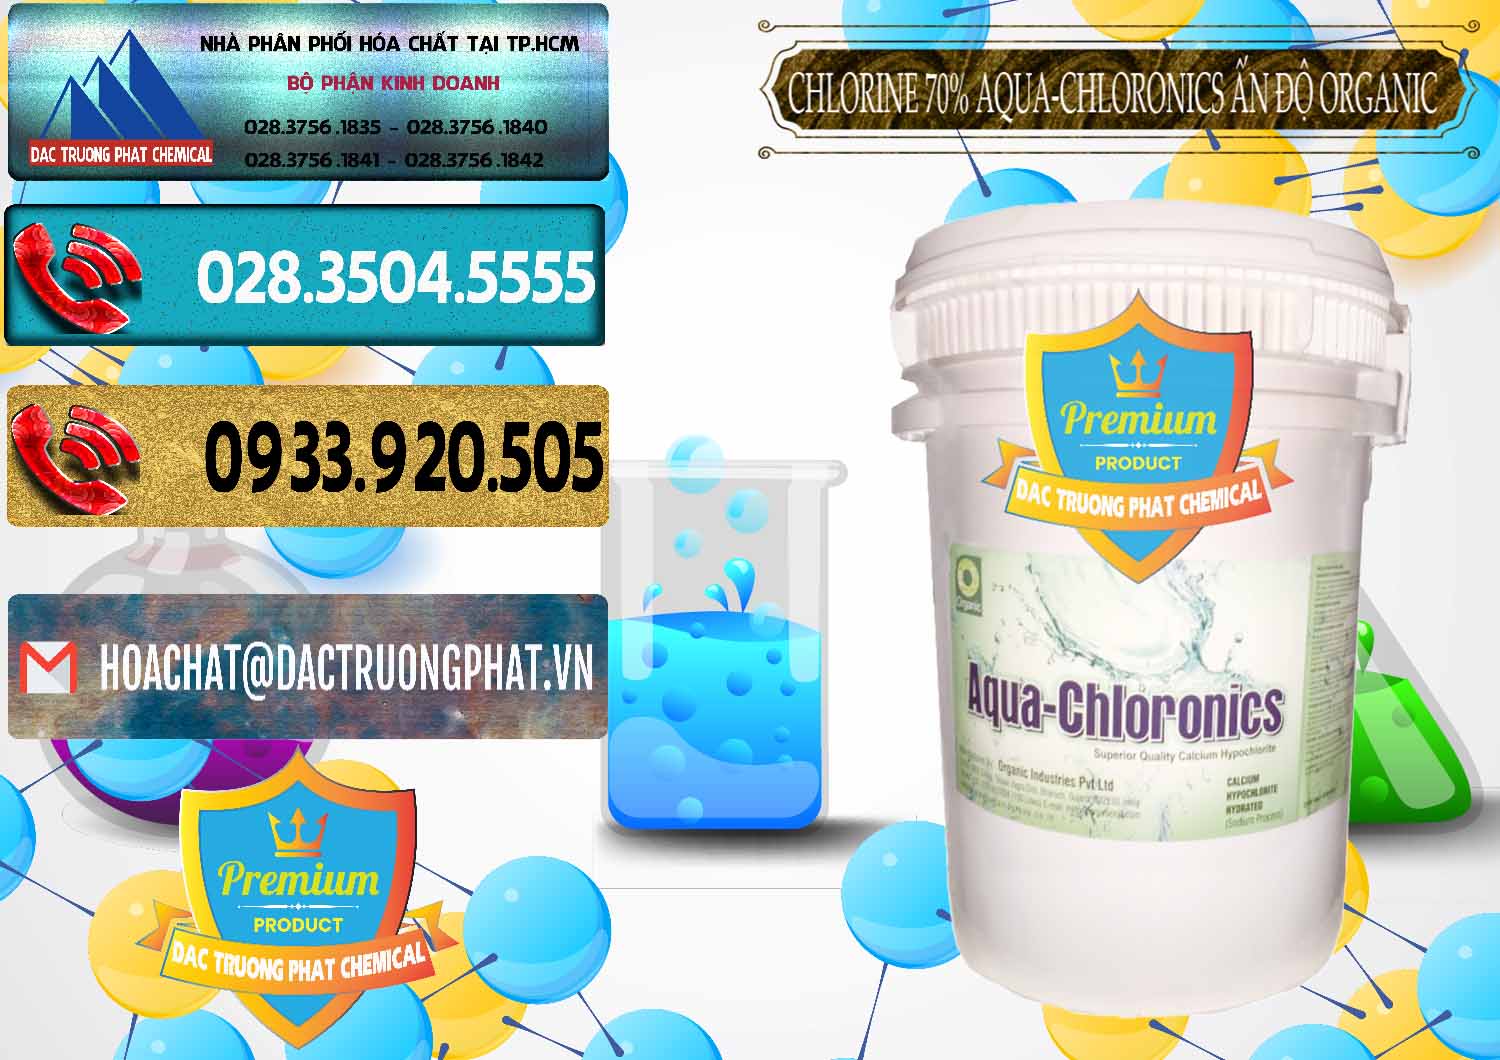 Nơi kinh doanh _ bán Chlorine – Clorin 70% Aqua-Chloronics Ấn Độ Organic India - 0211 - Đơn vị phân phối _ cung cấp hóa chất tại TP.HCM - hoachatdetnhuom.com